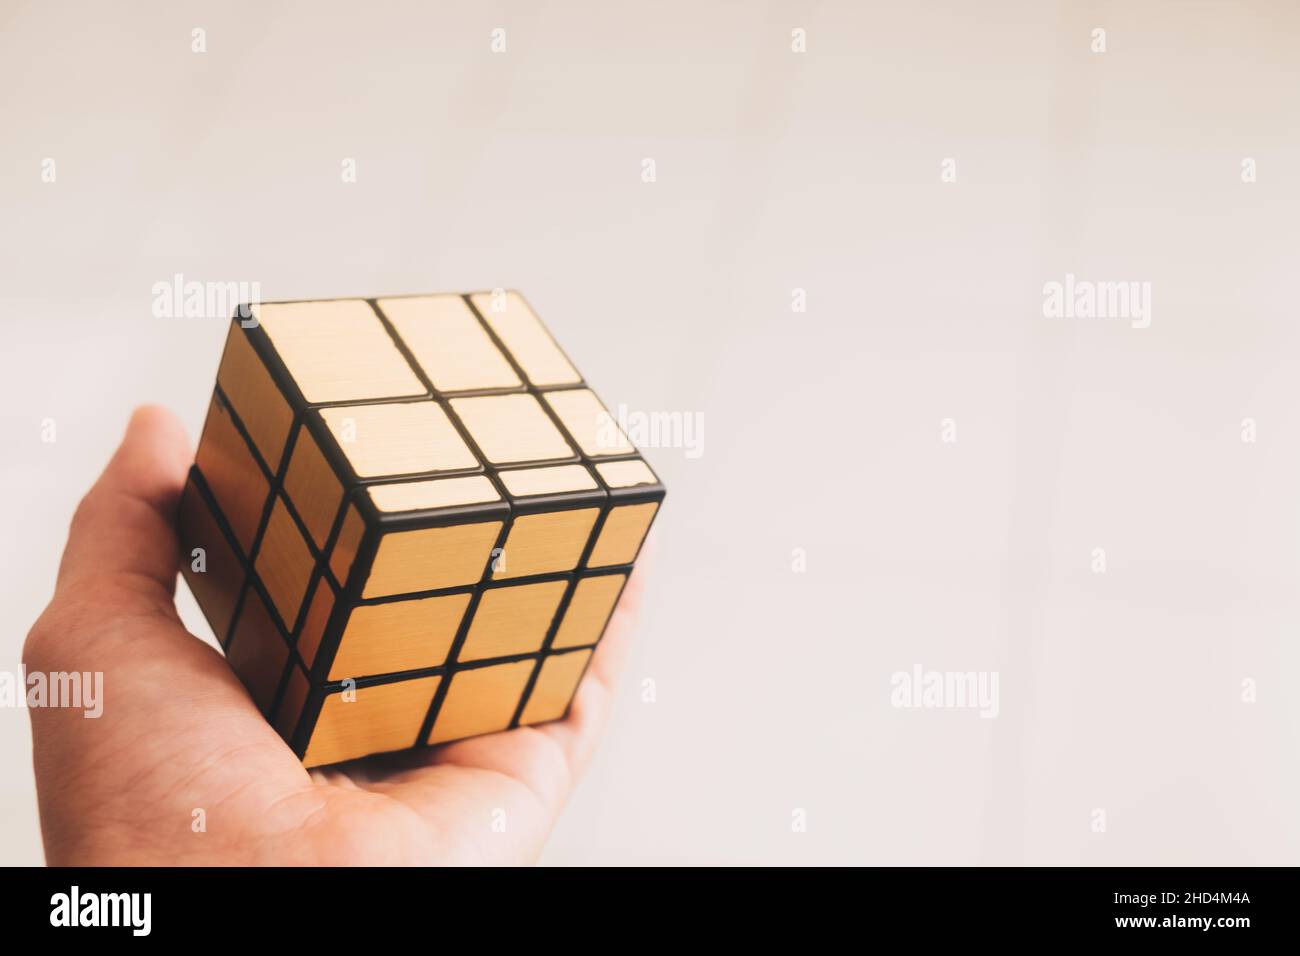 KORONADAL, PH – DEC 26, 2021: Il Cubo di Rubik è stato inventato da Erno Rubik. Mano che tiene un modello oro irregolare completato del puzzle cubo di rubik 3x3. Foto Stock